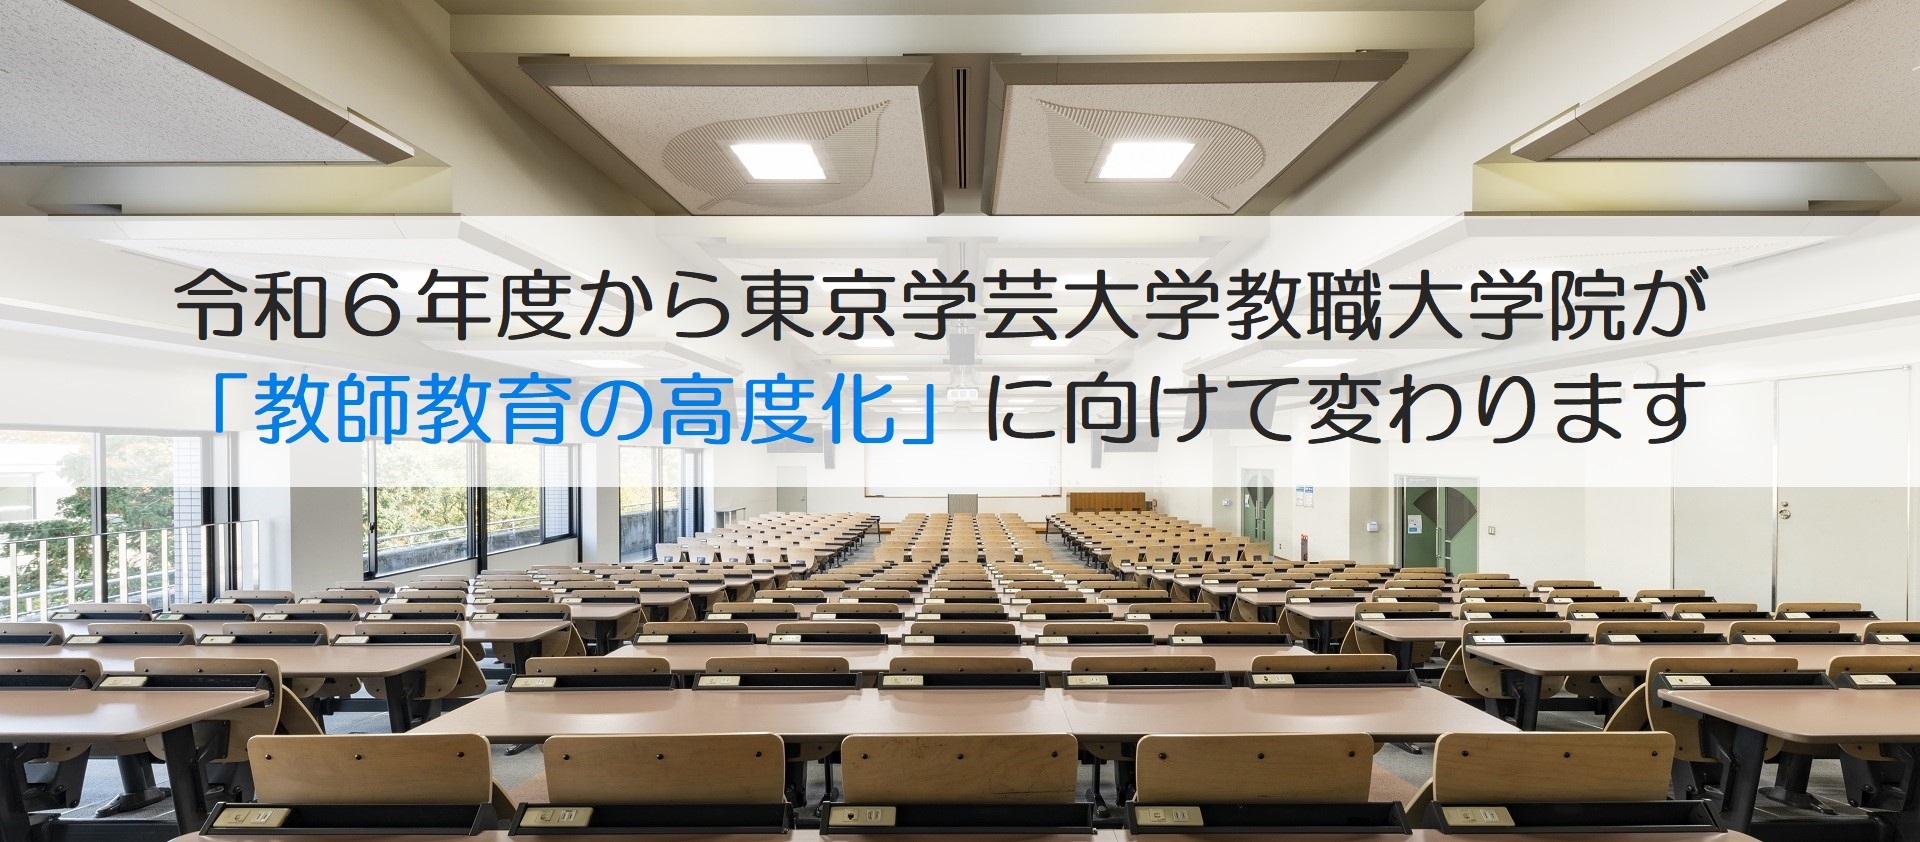 令和６年度から 東京学芸大学教職大学院が 「教師教育の高度化」 に向けて変わります